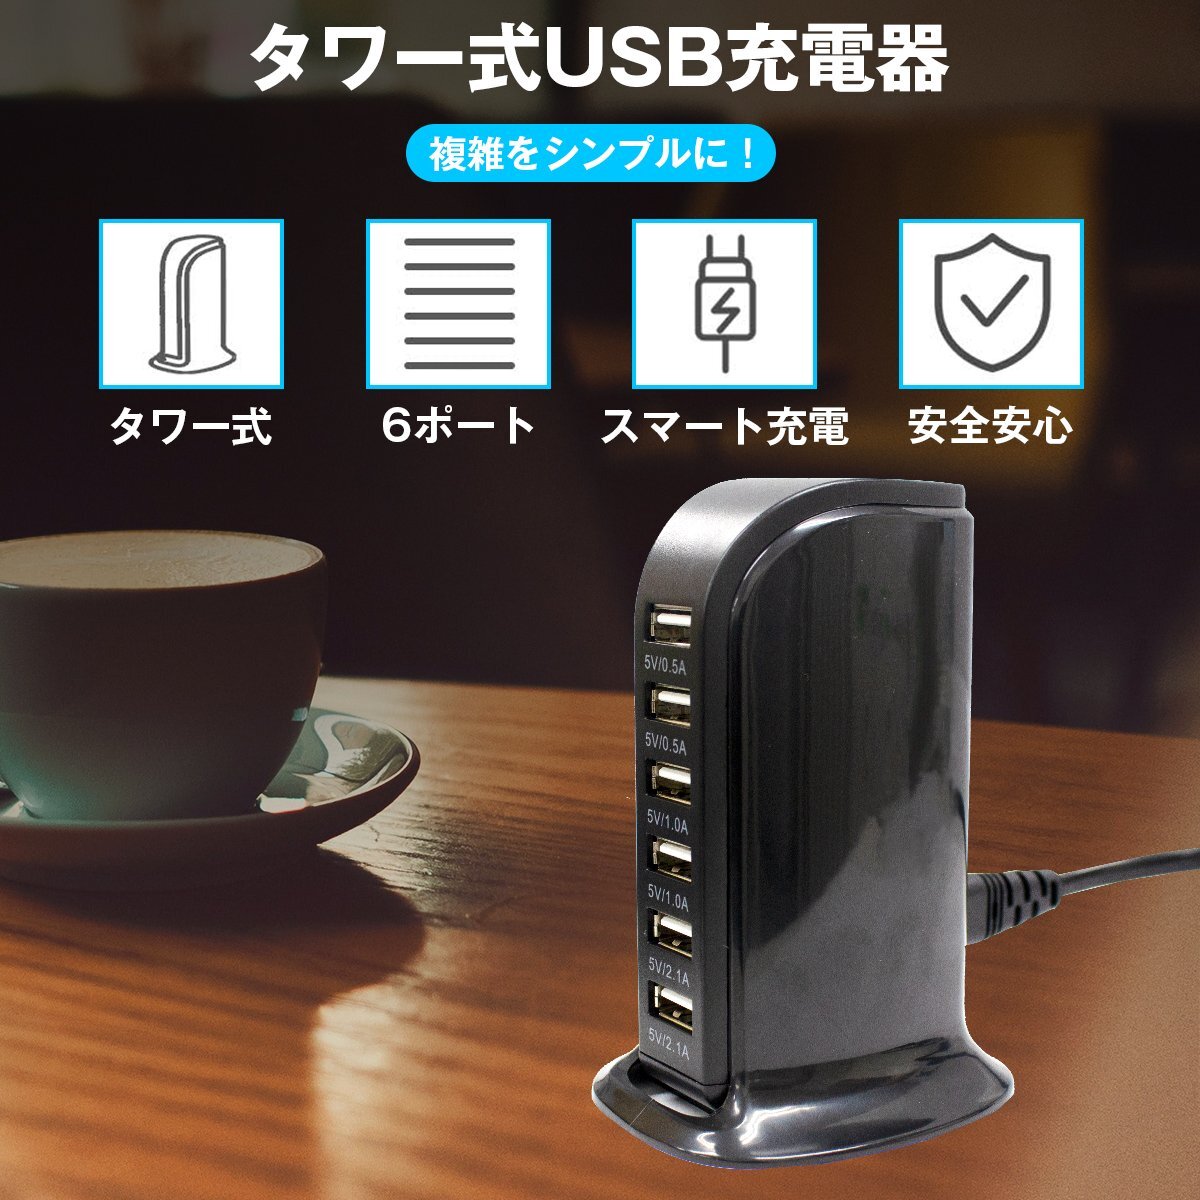 【 новый товар  быстрая доставка 】6 подставка   одновременно   эл. зарядка  возможно  USB зарядное устройство   черный   смартфон  ... 6 порт   iPhone  компактный  